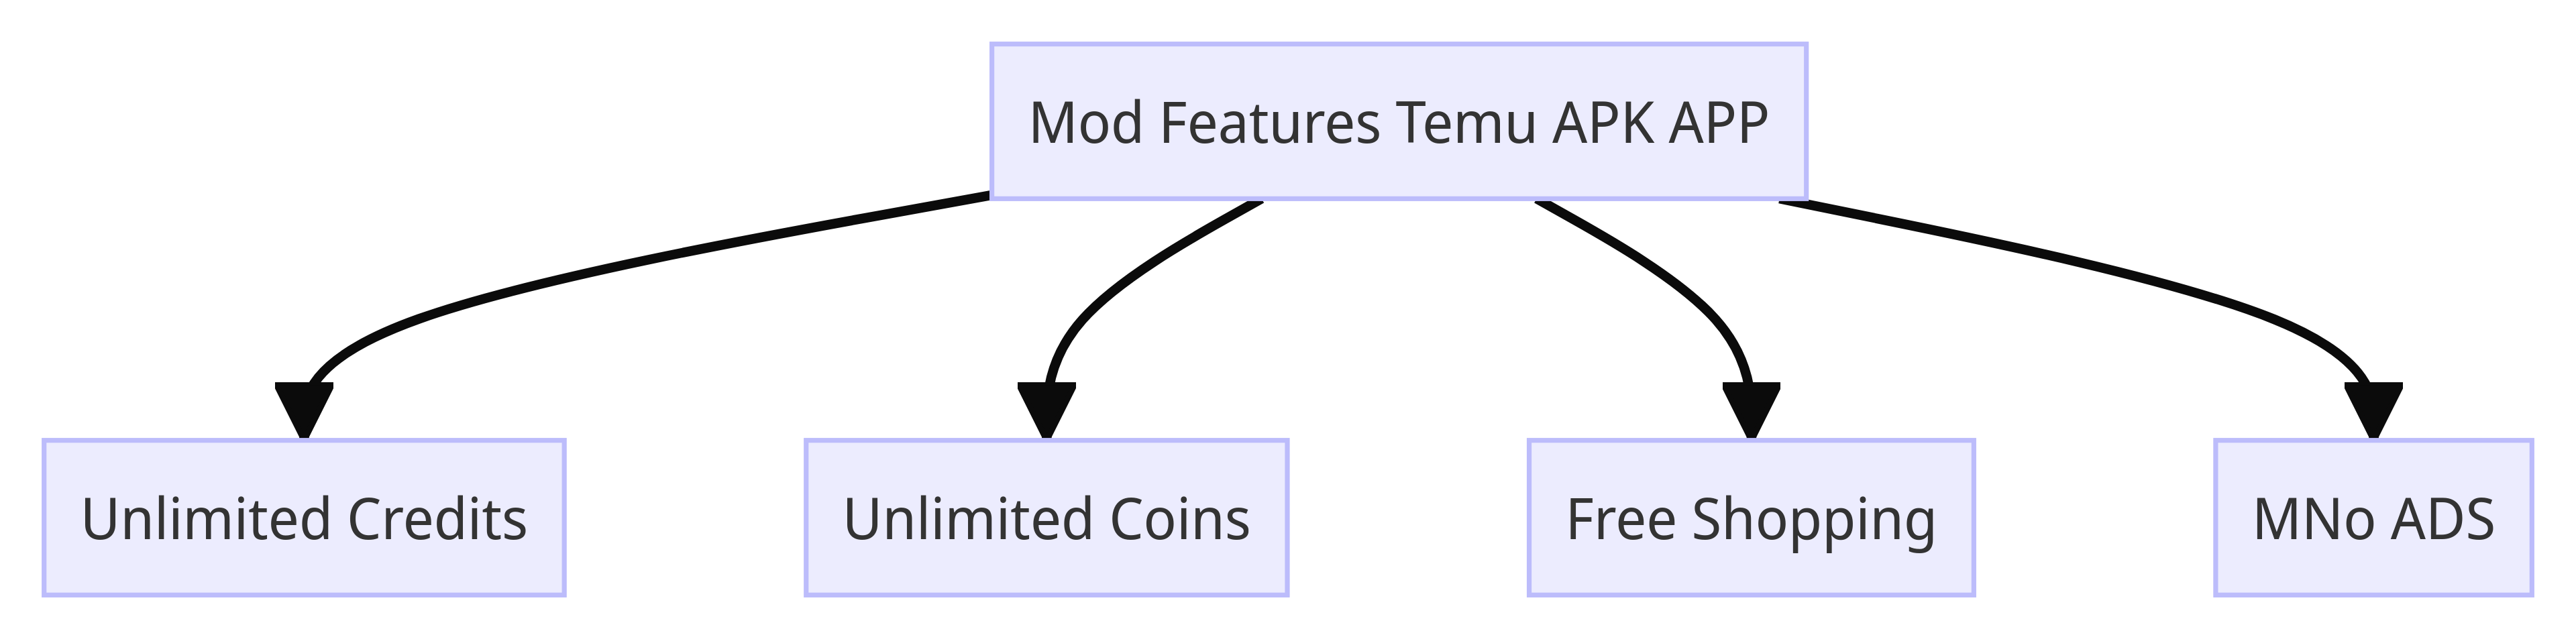 Mod Features Temu APK APP